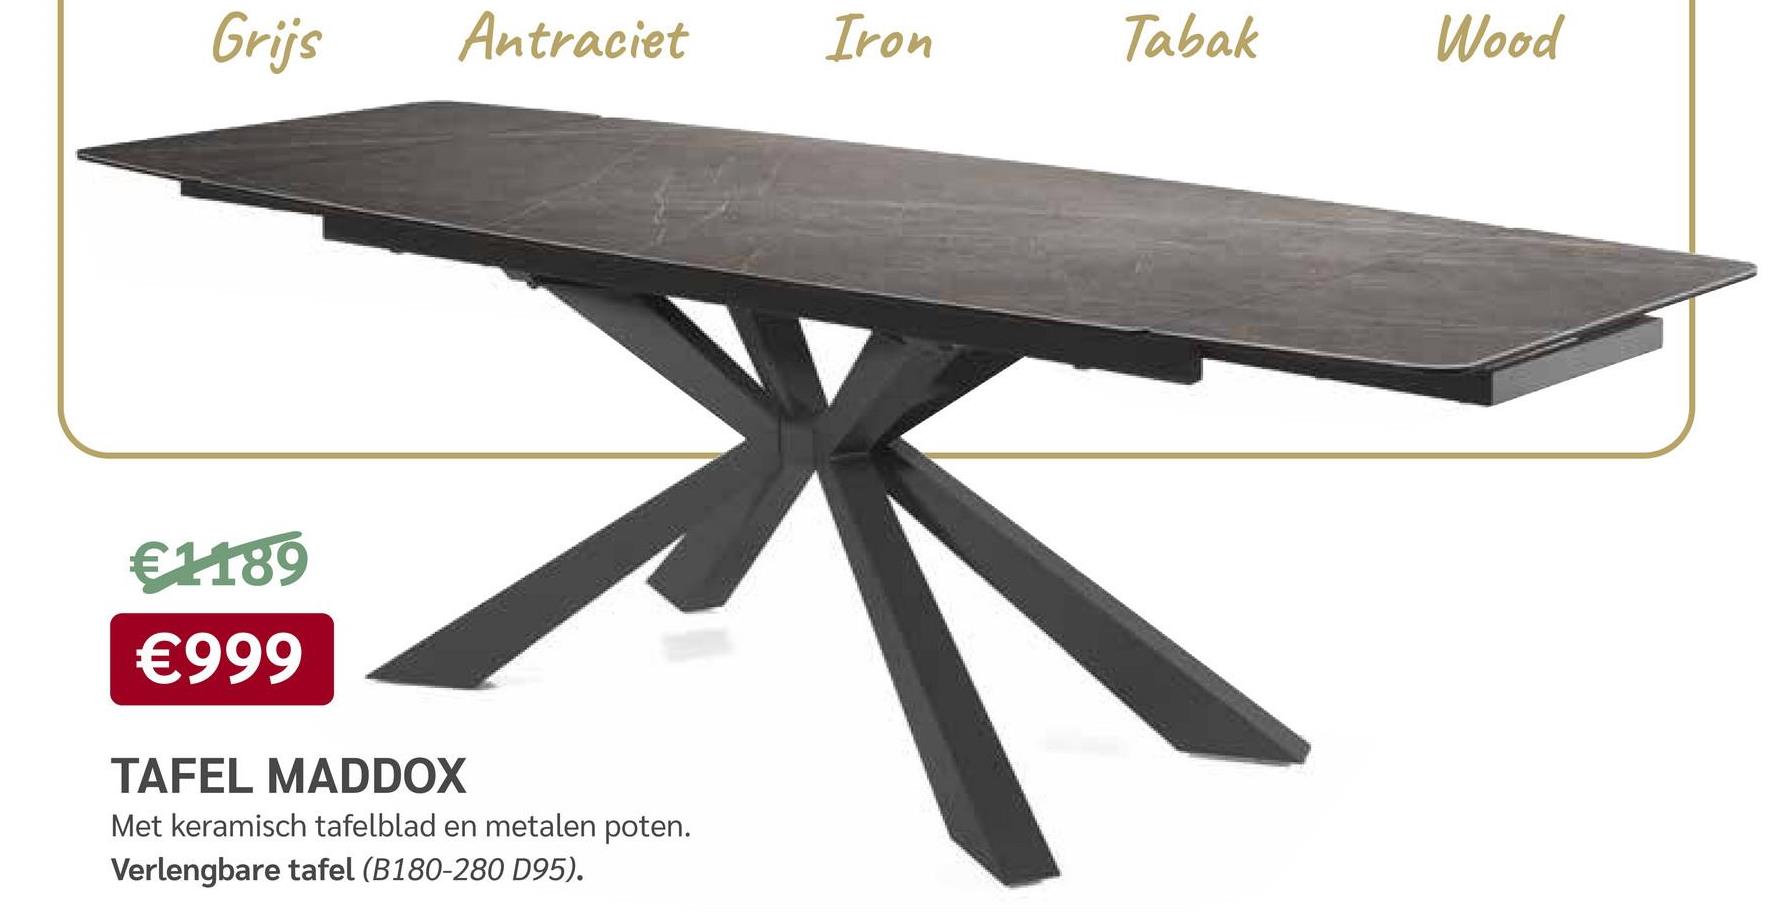 Grijs
€1189
€999
Antraciet
TAFEL MADDOX
Met keramisch tafelblad en metalen poten.
Verlengbare tafel (B180-280 D95).
Iron
Tabak
Wood